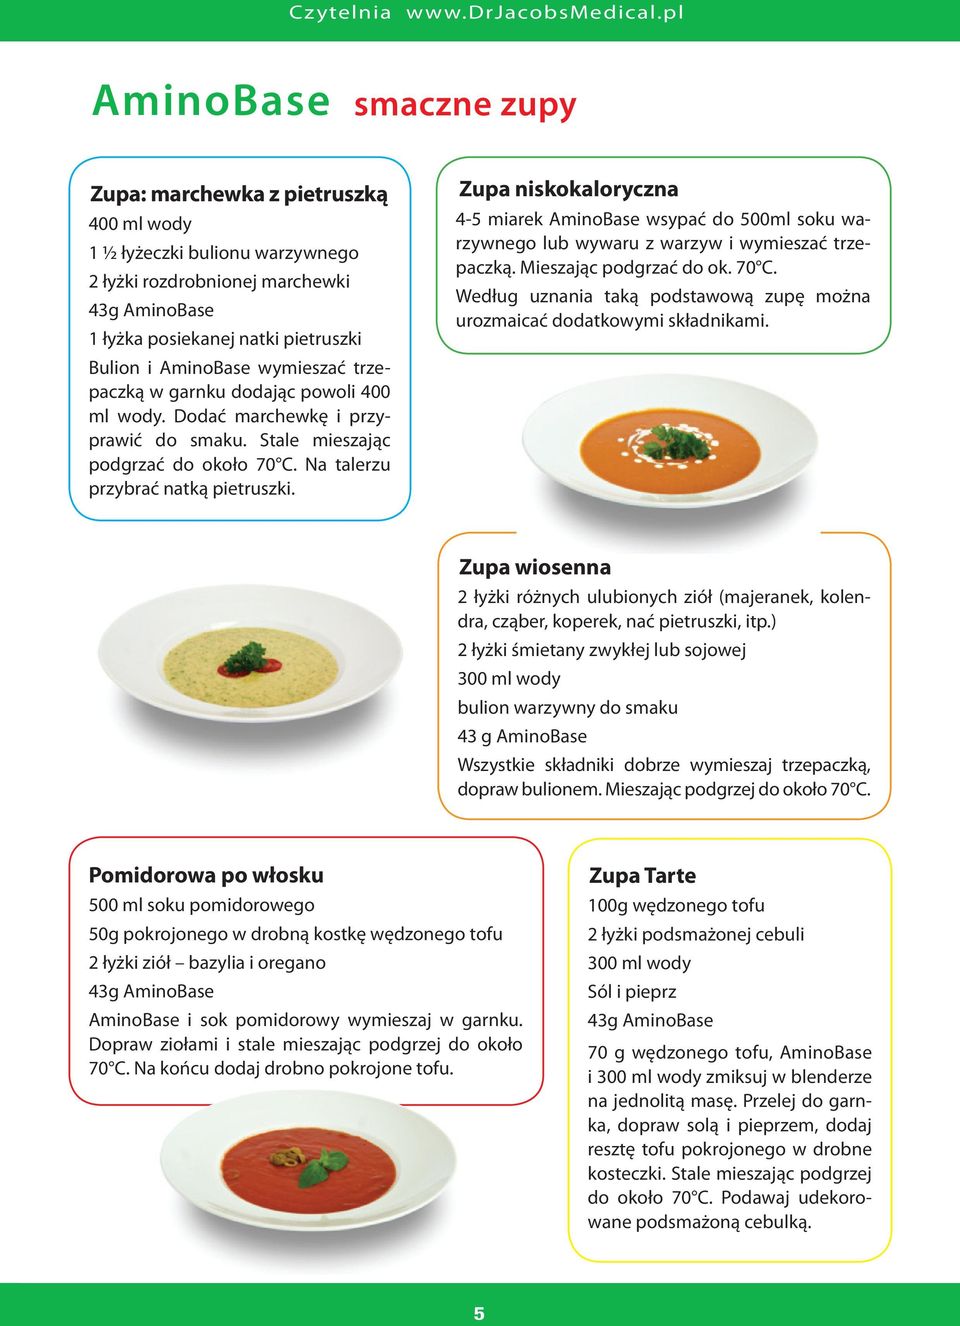 Zupa niskokaloryczna 4-5 miarek AminoBase wsypać do 500ml soku warzywnego lub wywaru z warzyw i wymieszać trzepaczką. Mieszając podgrzać do ok. 70 C.